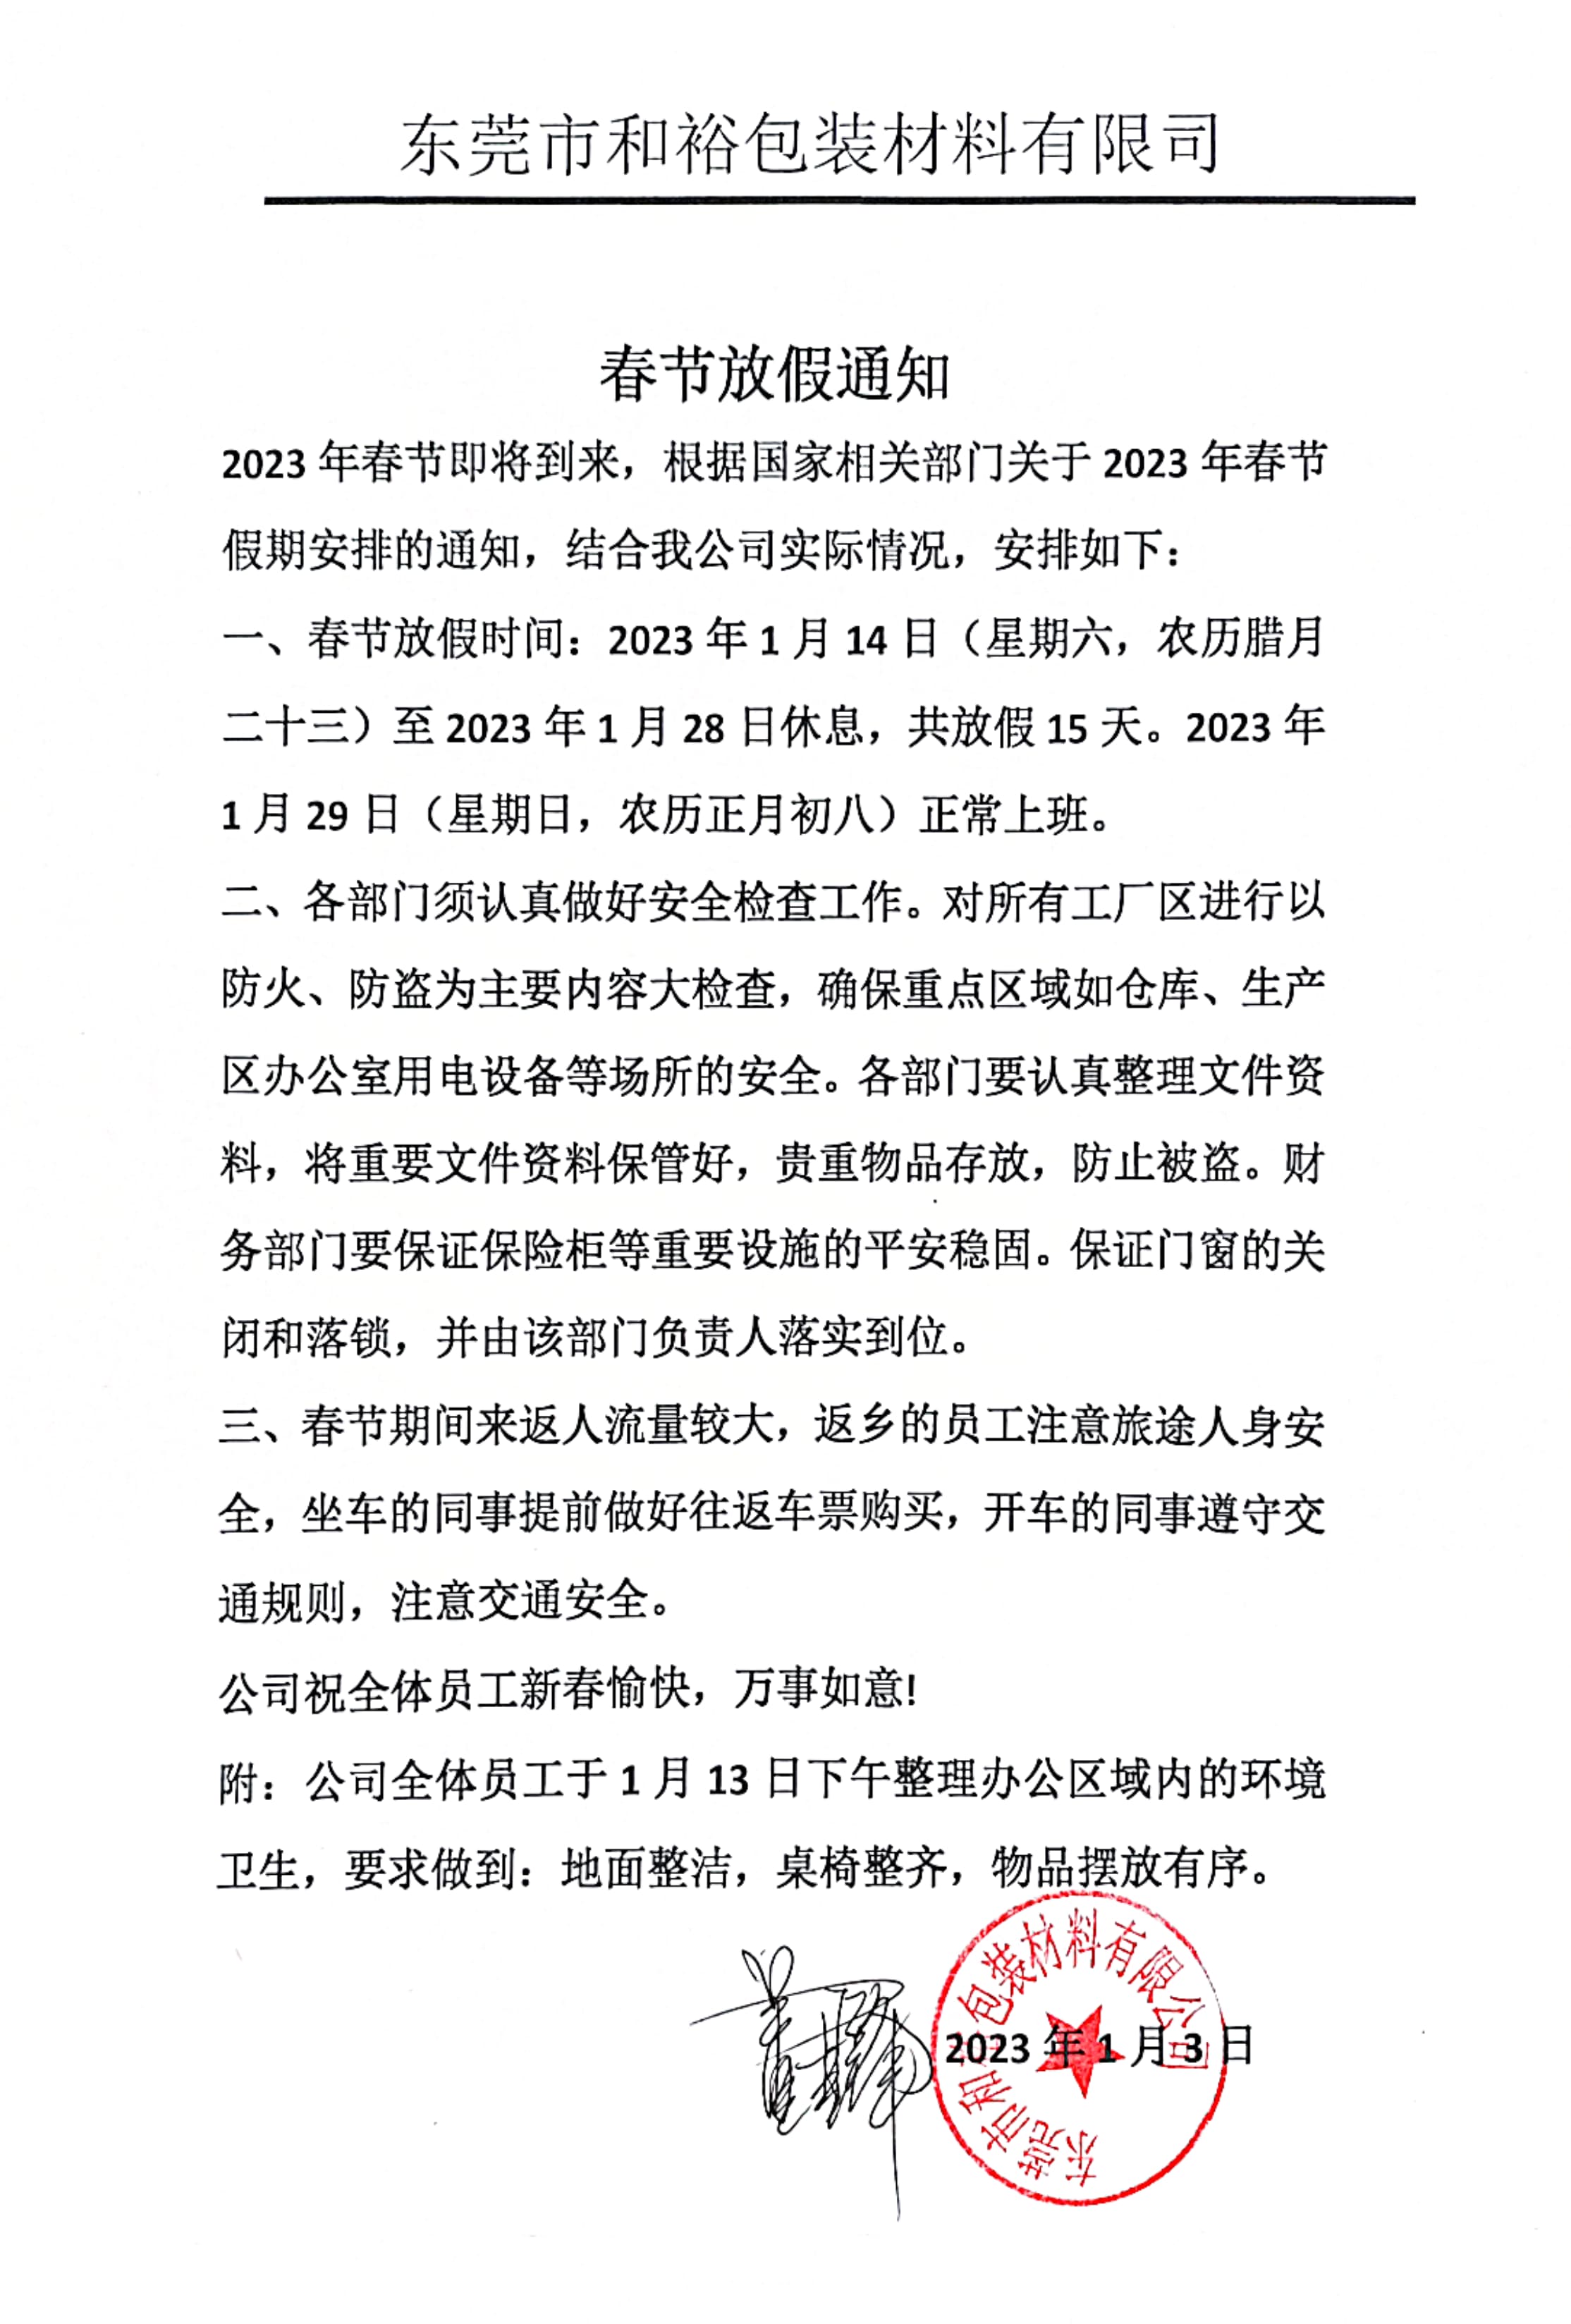 萍乡市2023年和裕包装春节放假通知